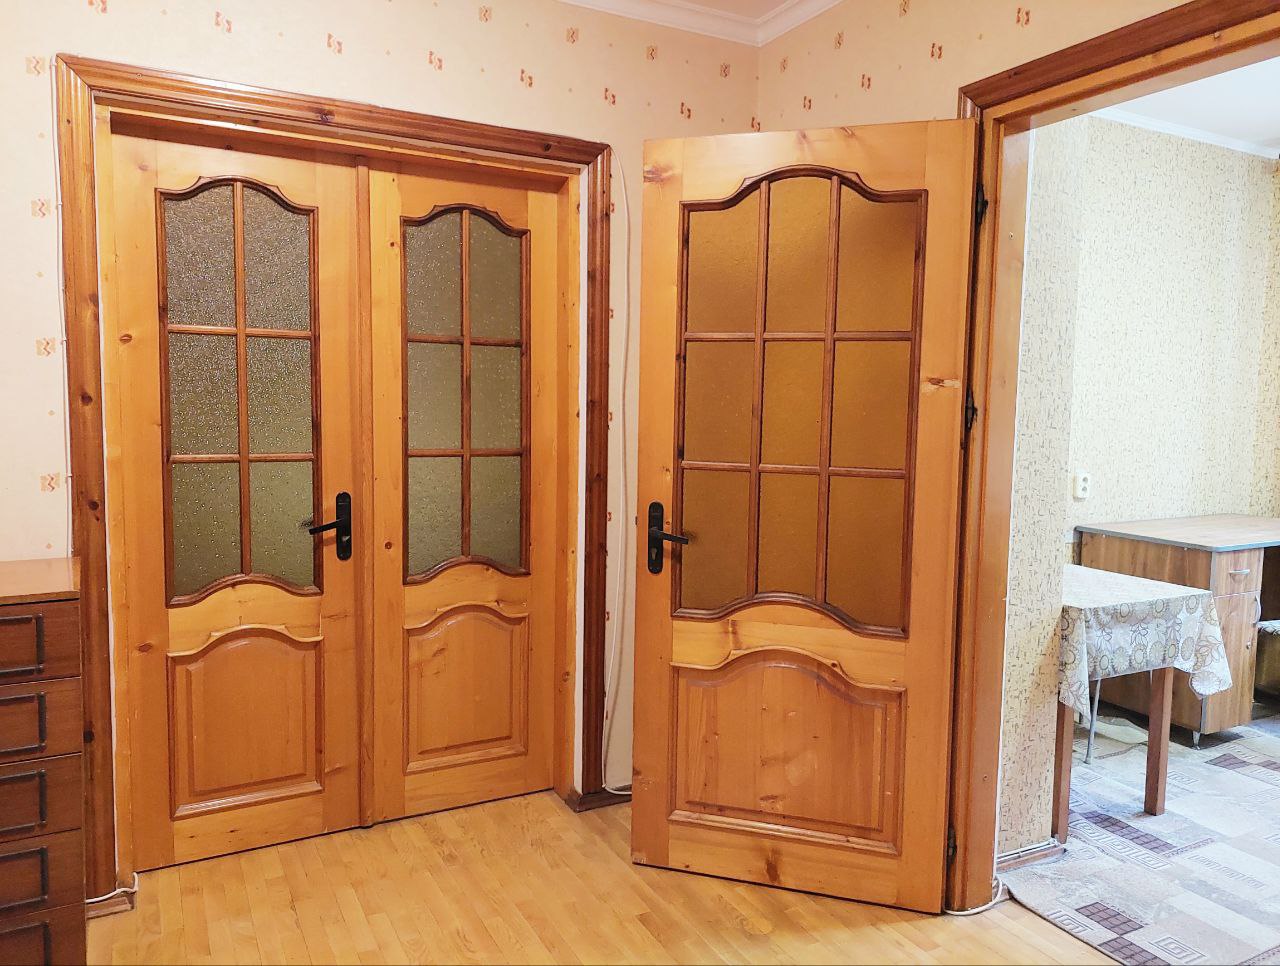 VÂNDUT Apartament de vânzare, Chișinău, sec. Ciocana, seria 143, 2 odăi, 55m2, et.2